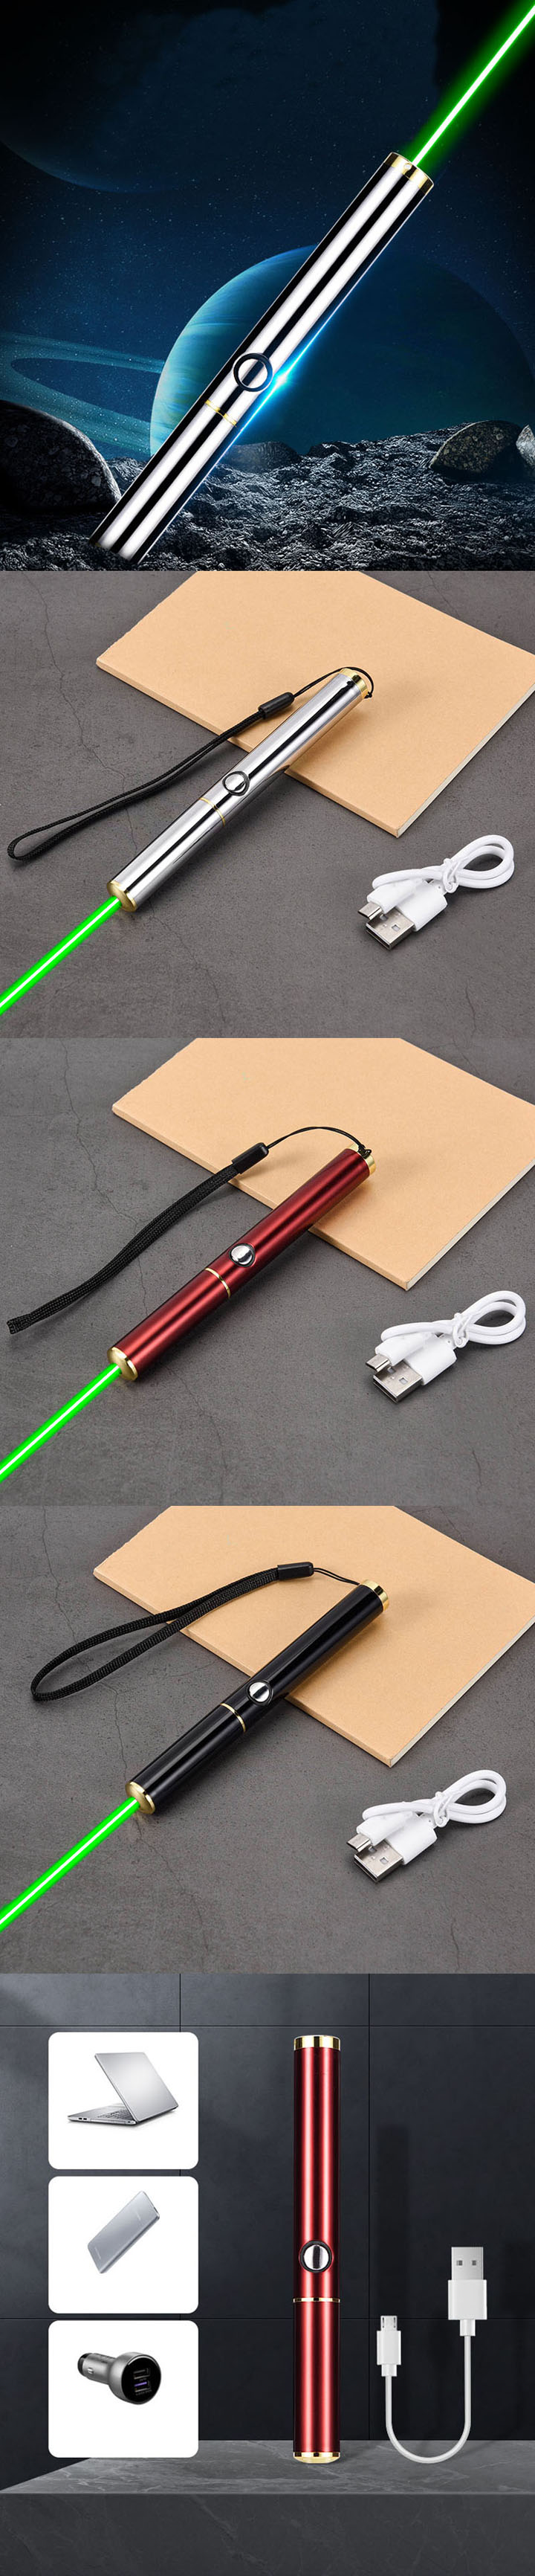 USB groenlicht laserpen